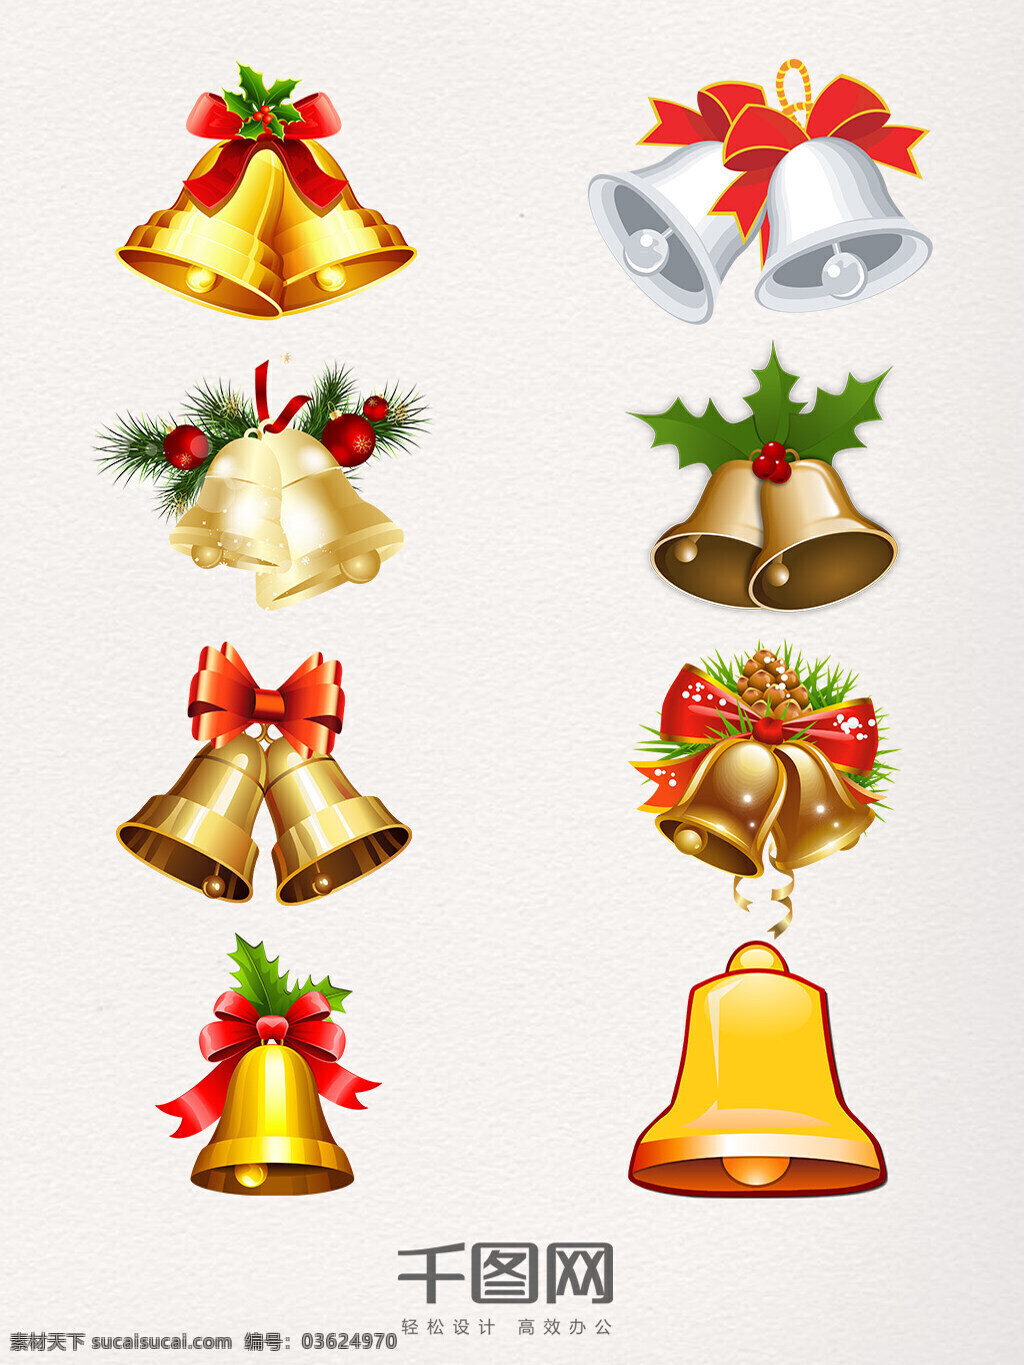 圣诞节 可爱 铃铛 装饰 圣诞节铃铛 银色 节日装饰 精致 卡通圣诞 可爱手绘